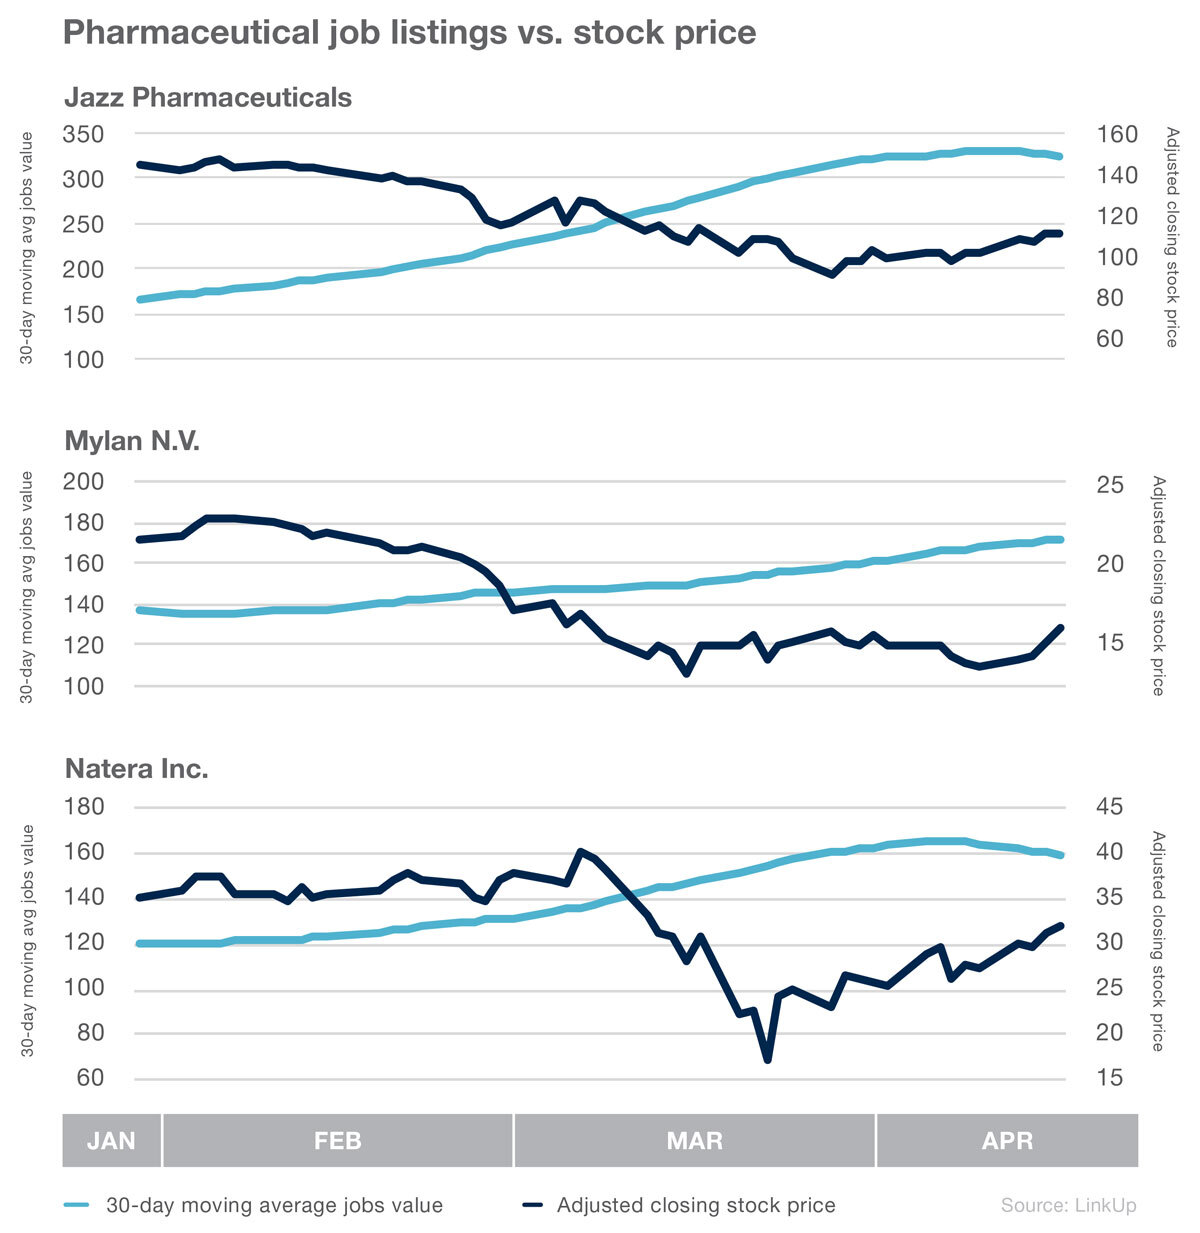 Pharmaceutical job listings vs. stock price in 2020